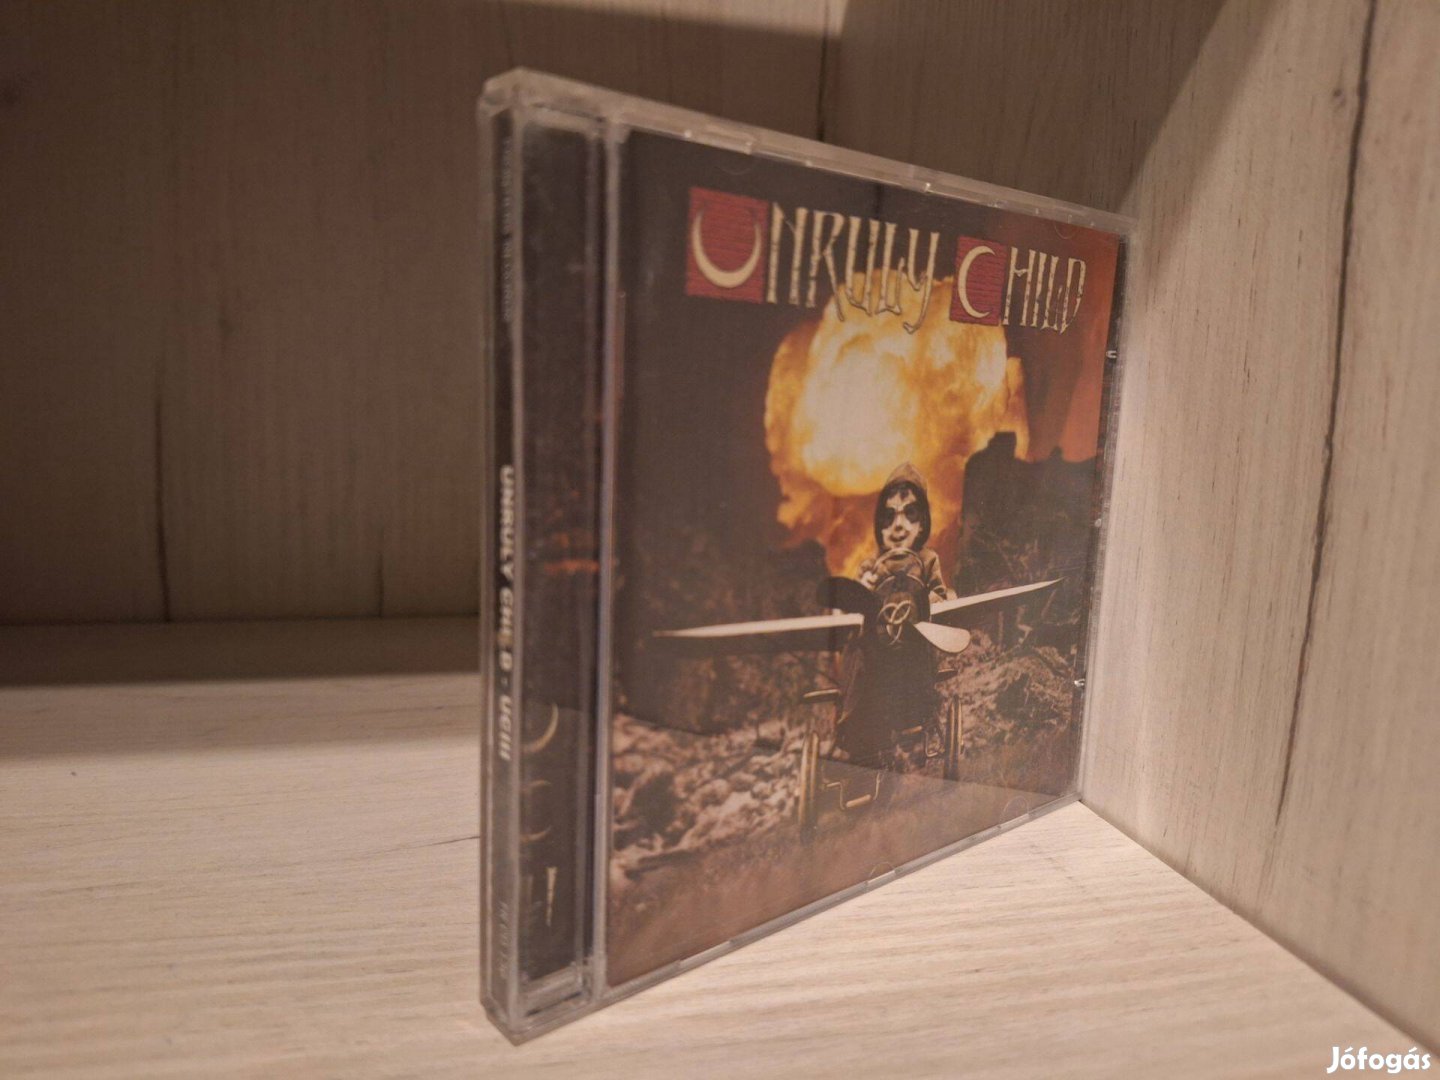 Unruly Child - Uciii CD